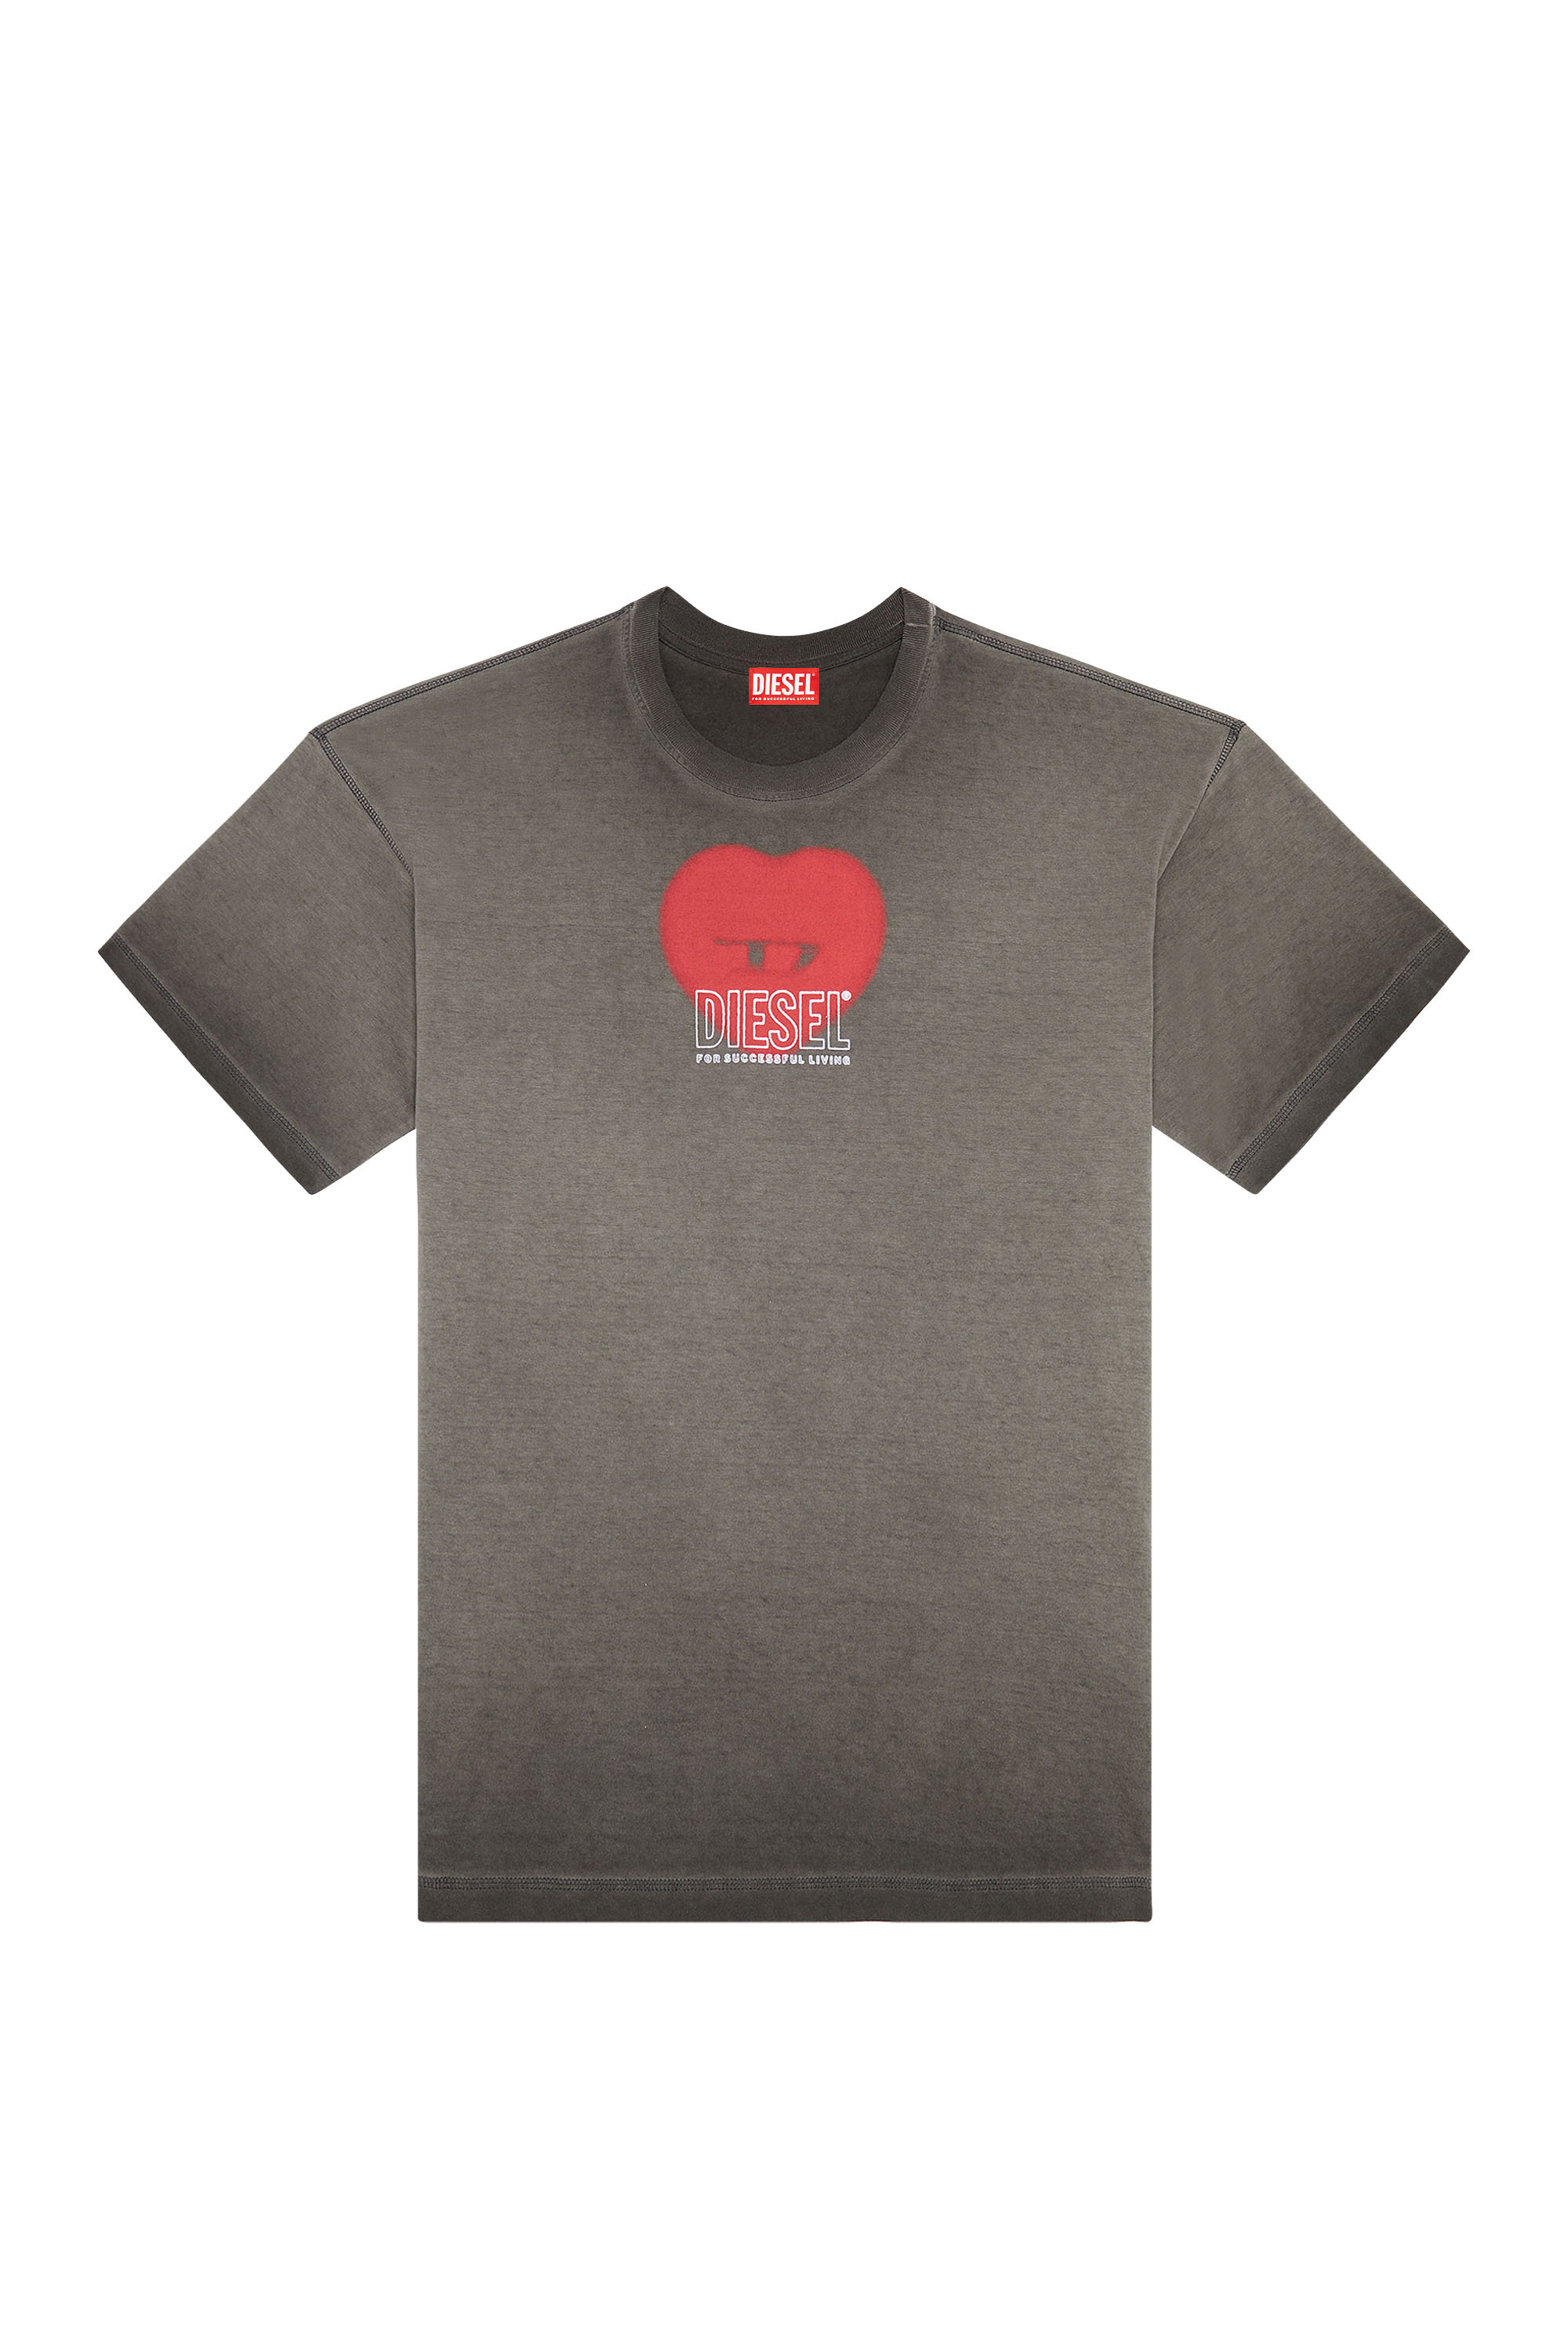 Diesel - T-BUXT-N4, Homme T-shirt avec imprimé cœur in Gris - Image 4